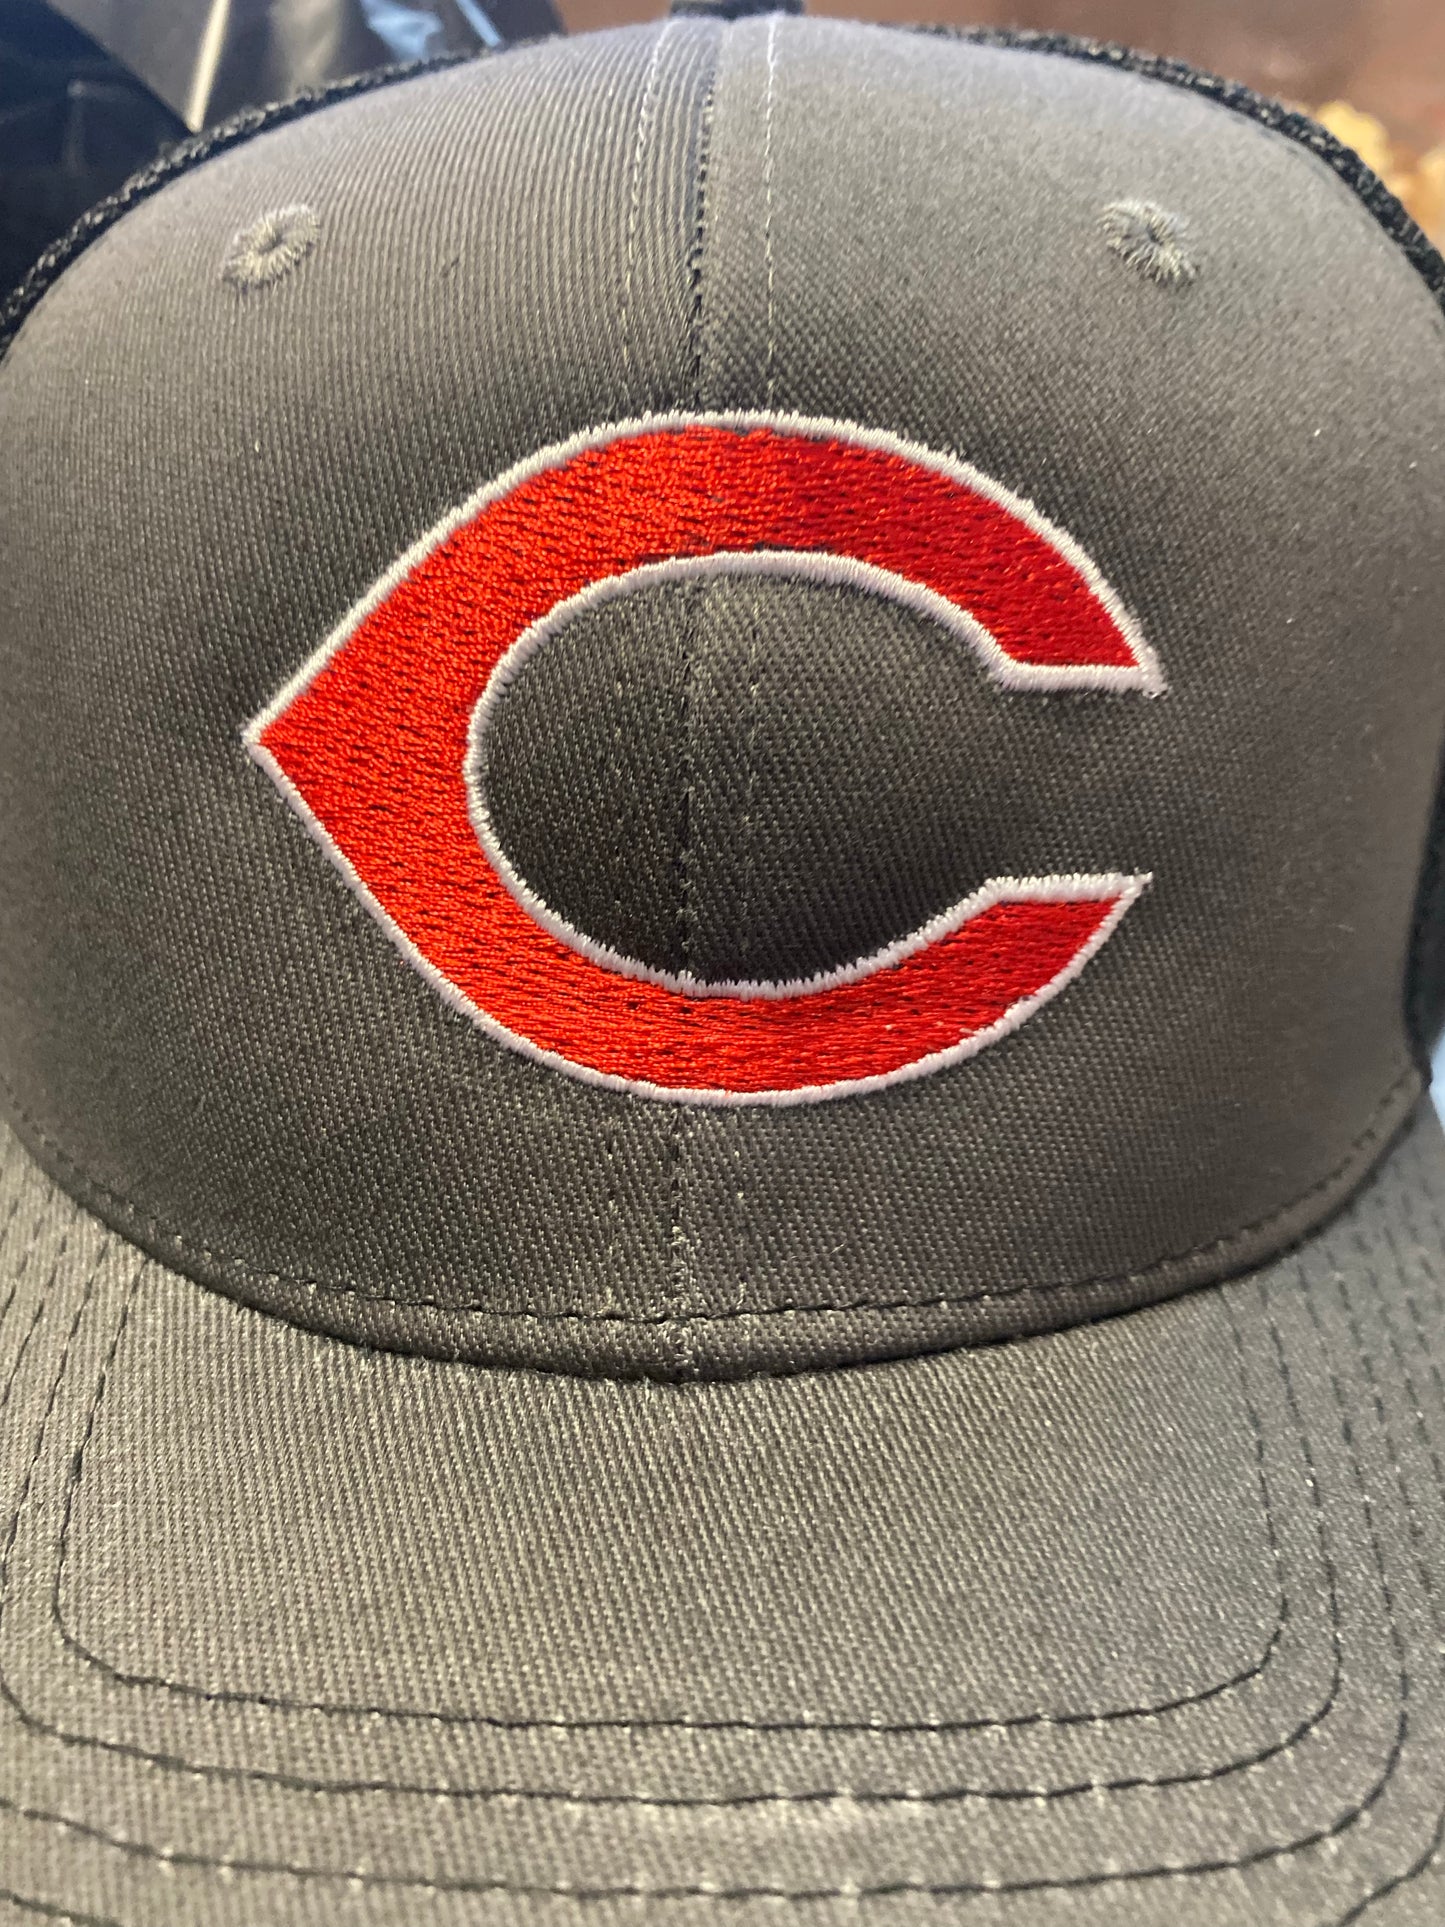 C Hat for Dream League